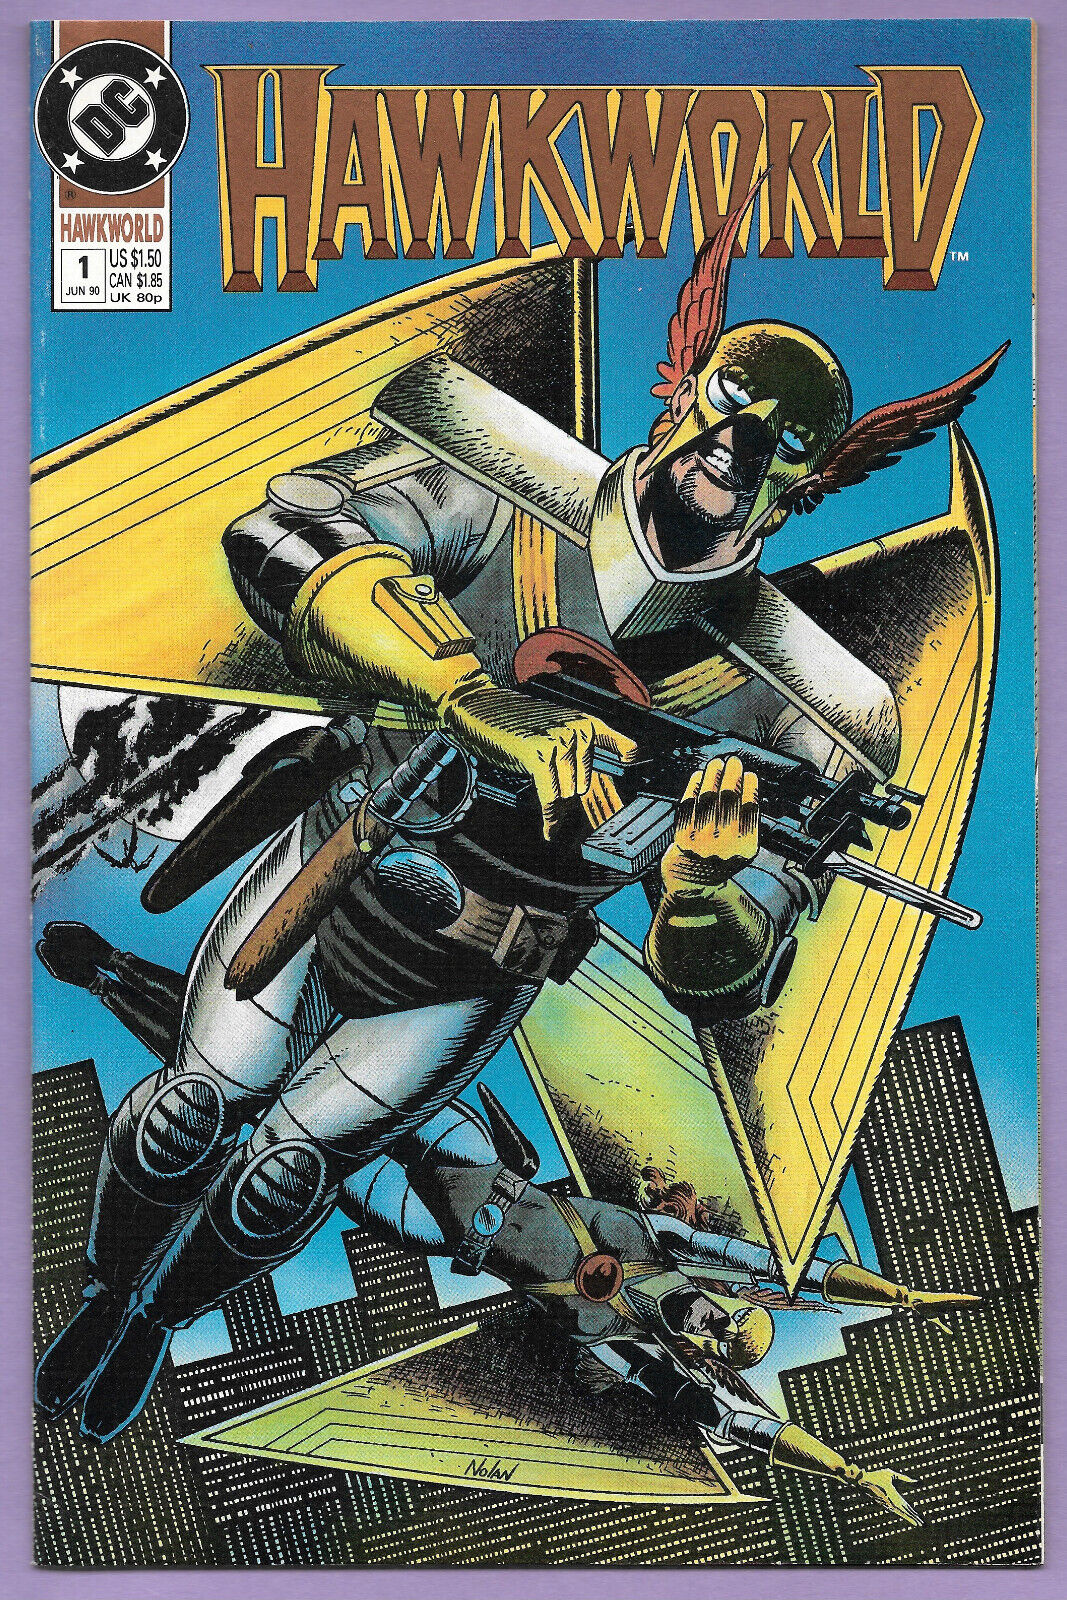 Hawkworld #1 - June 1990 - DC COmics! # Katar Hol Hawkman